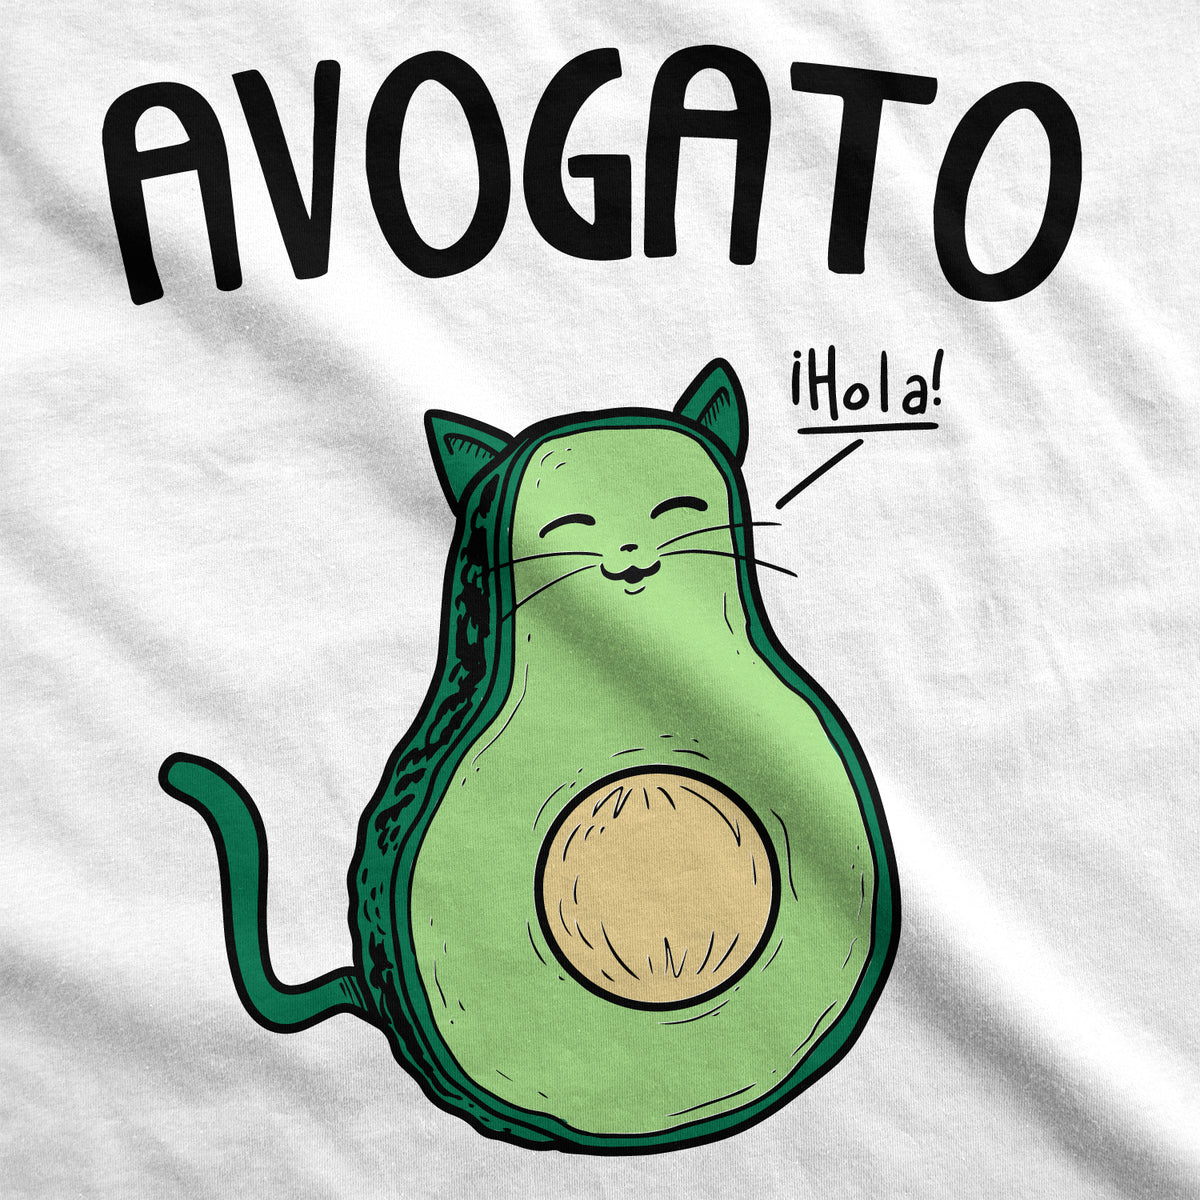 Avogato Women&#39;s T Shirt